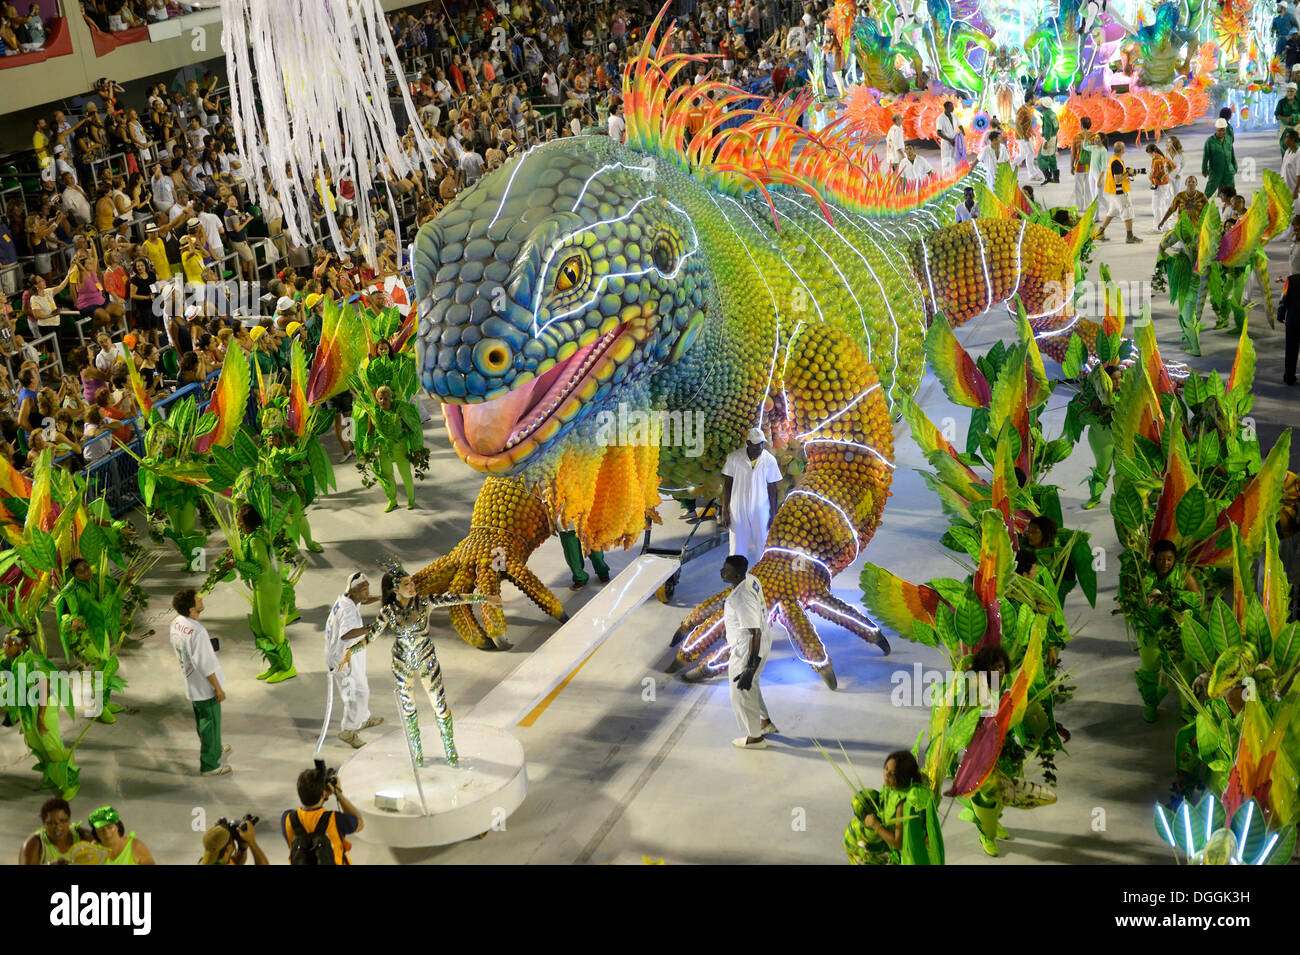 Giant green iguana, parade of the Academicos do Grande Rio samba school during the Carnival in Rio de Janeiro in 2013 Stock Photo